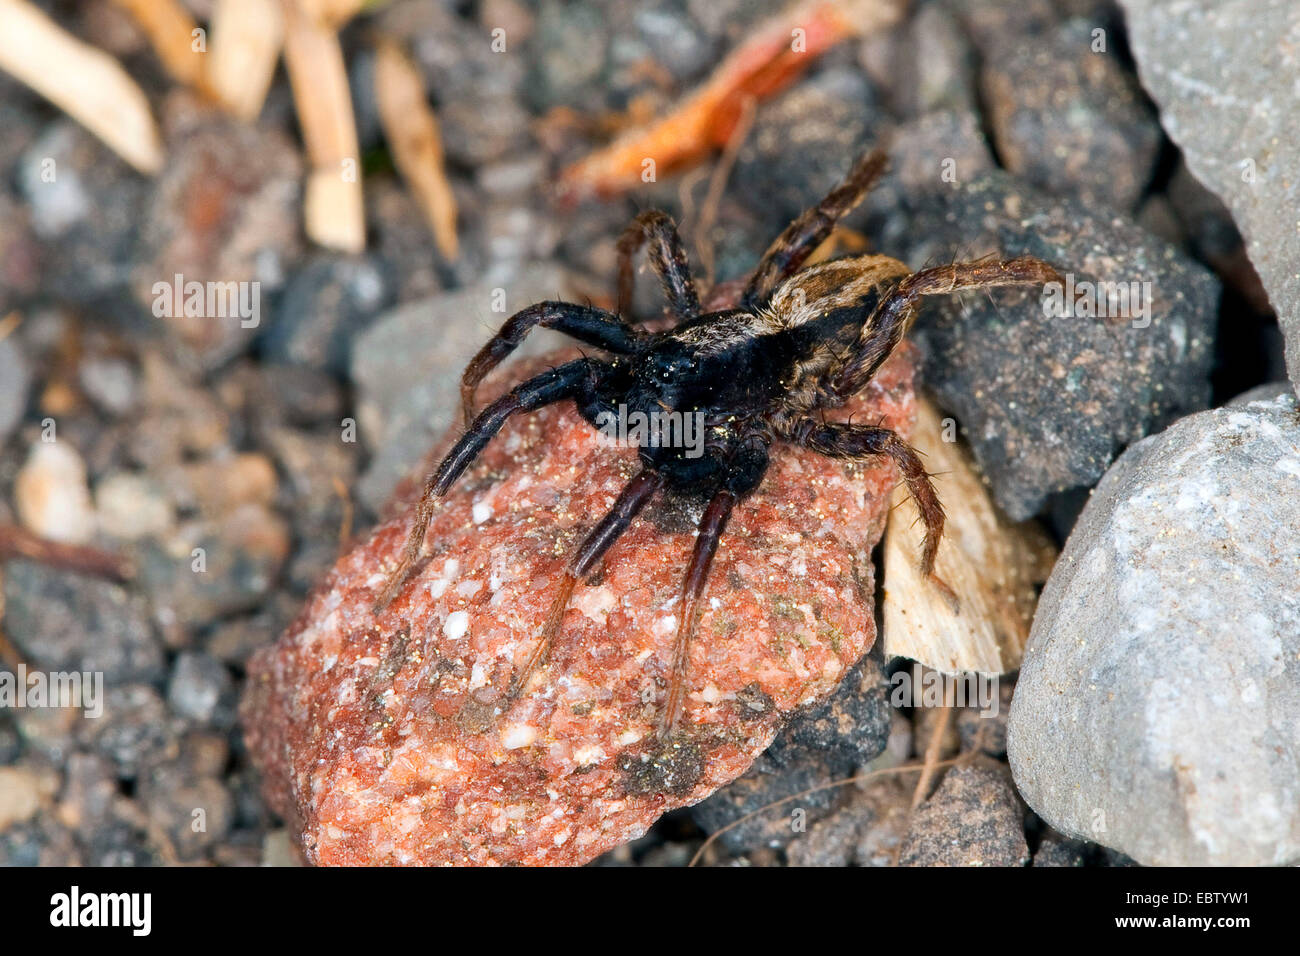 Les araignées lycoses, masse (Alopecosa cuneata), homme assis sur une pierre, Allemagne Banque D'Images